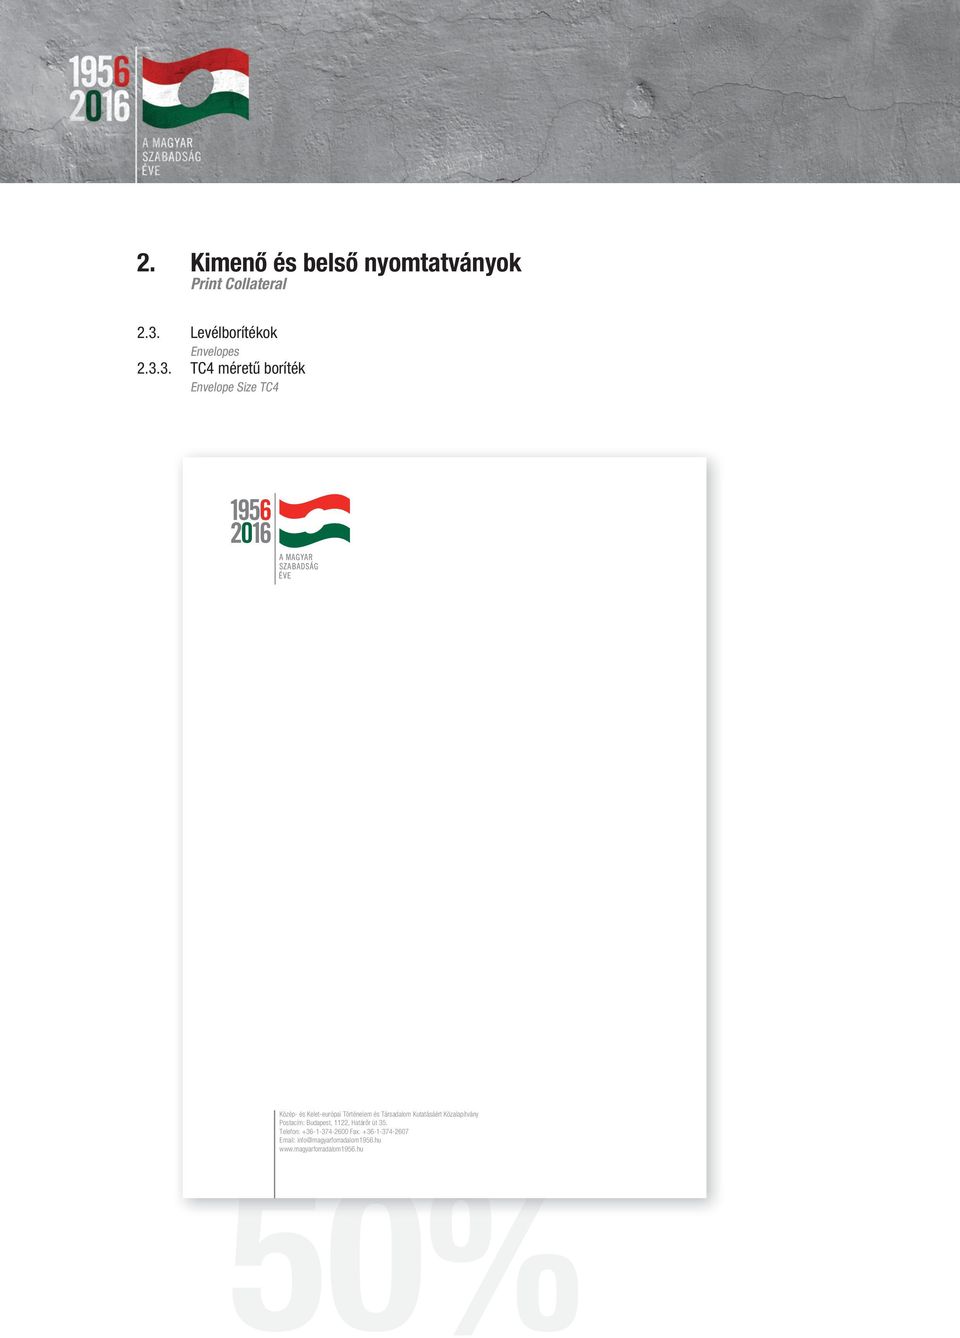 3. TC4 méretű boríték Envelope Size TC4 Közép- és Kelet-európai Történelem és